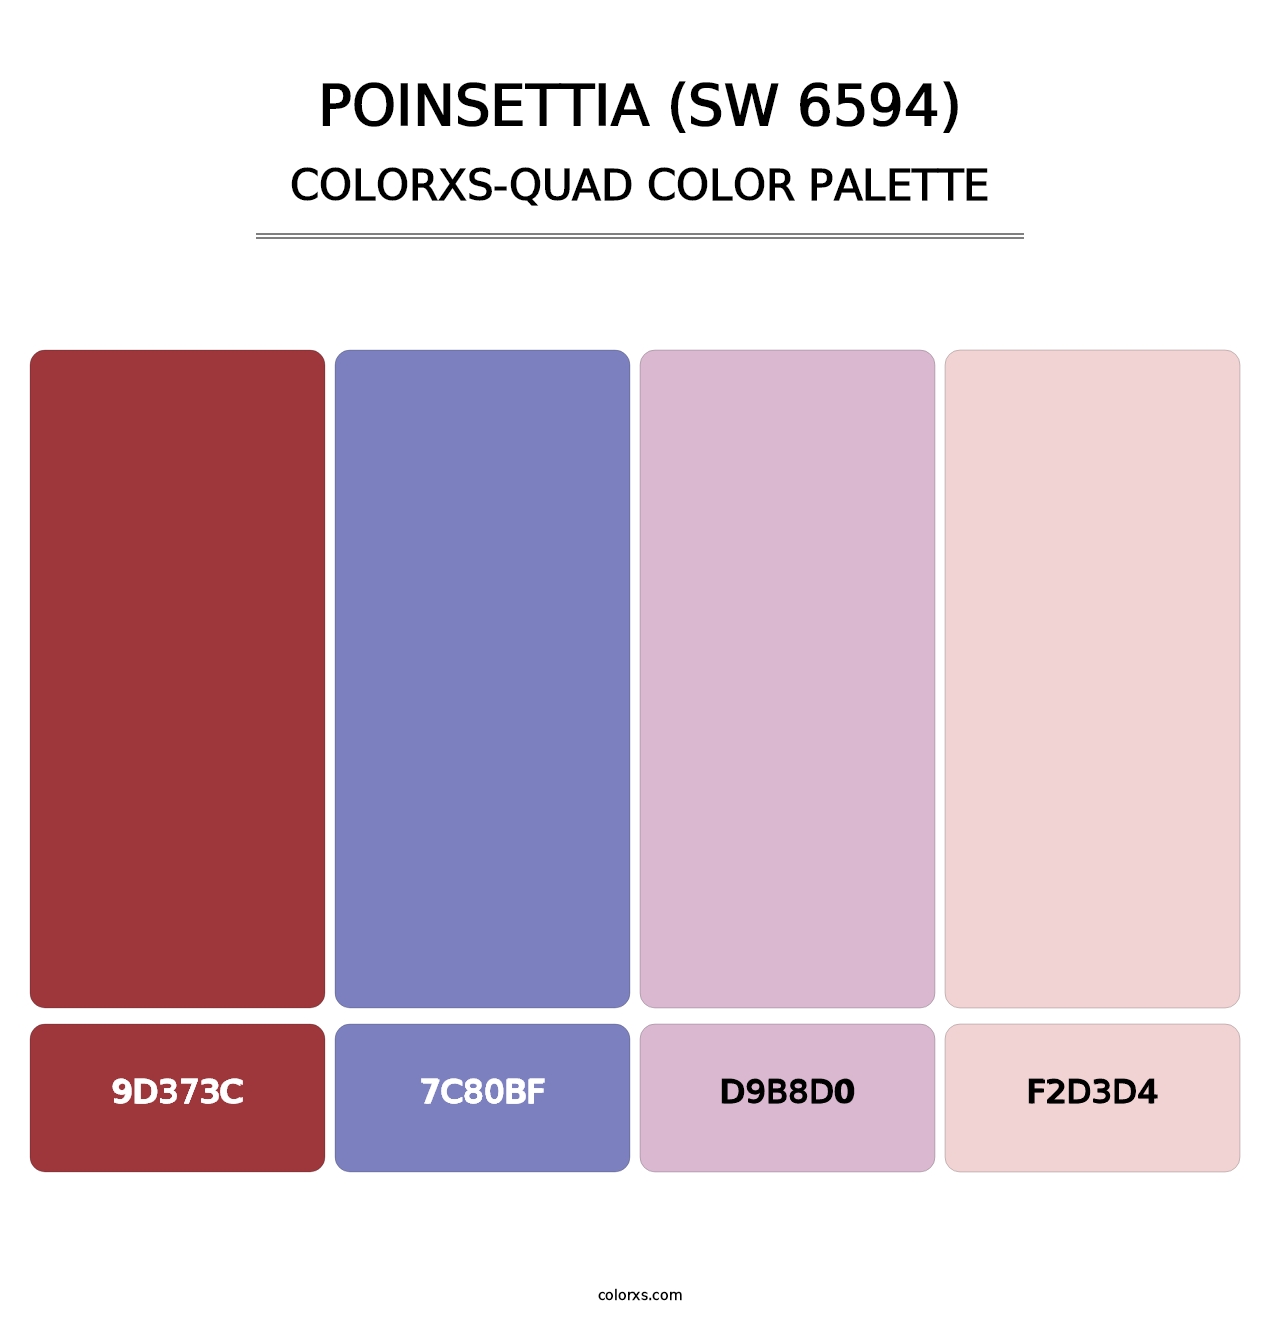 Poinsettia (SW 6594) - Colorxs Quad Palette